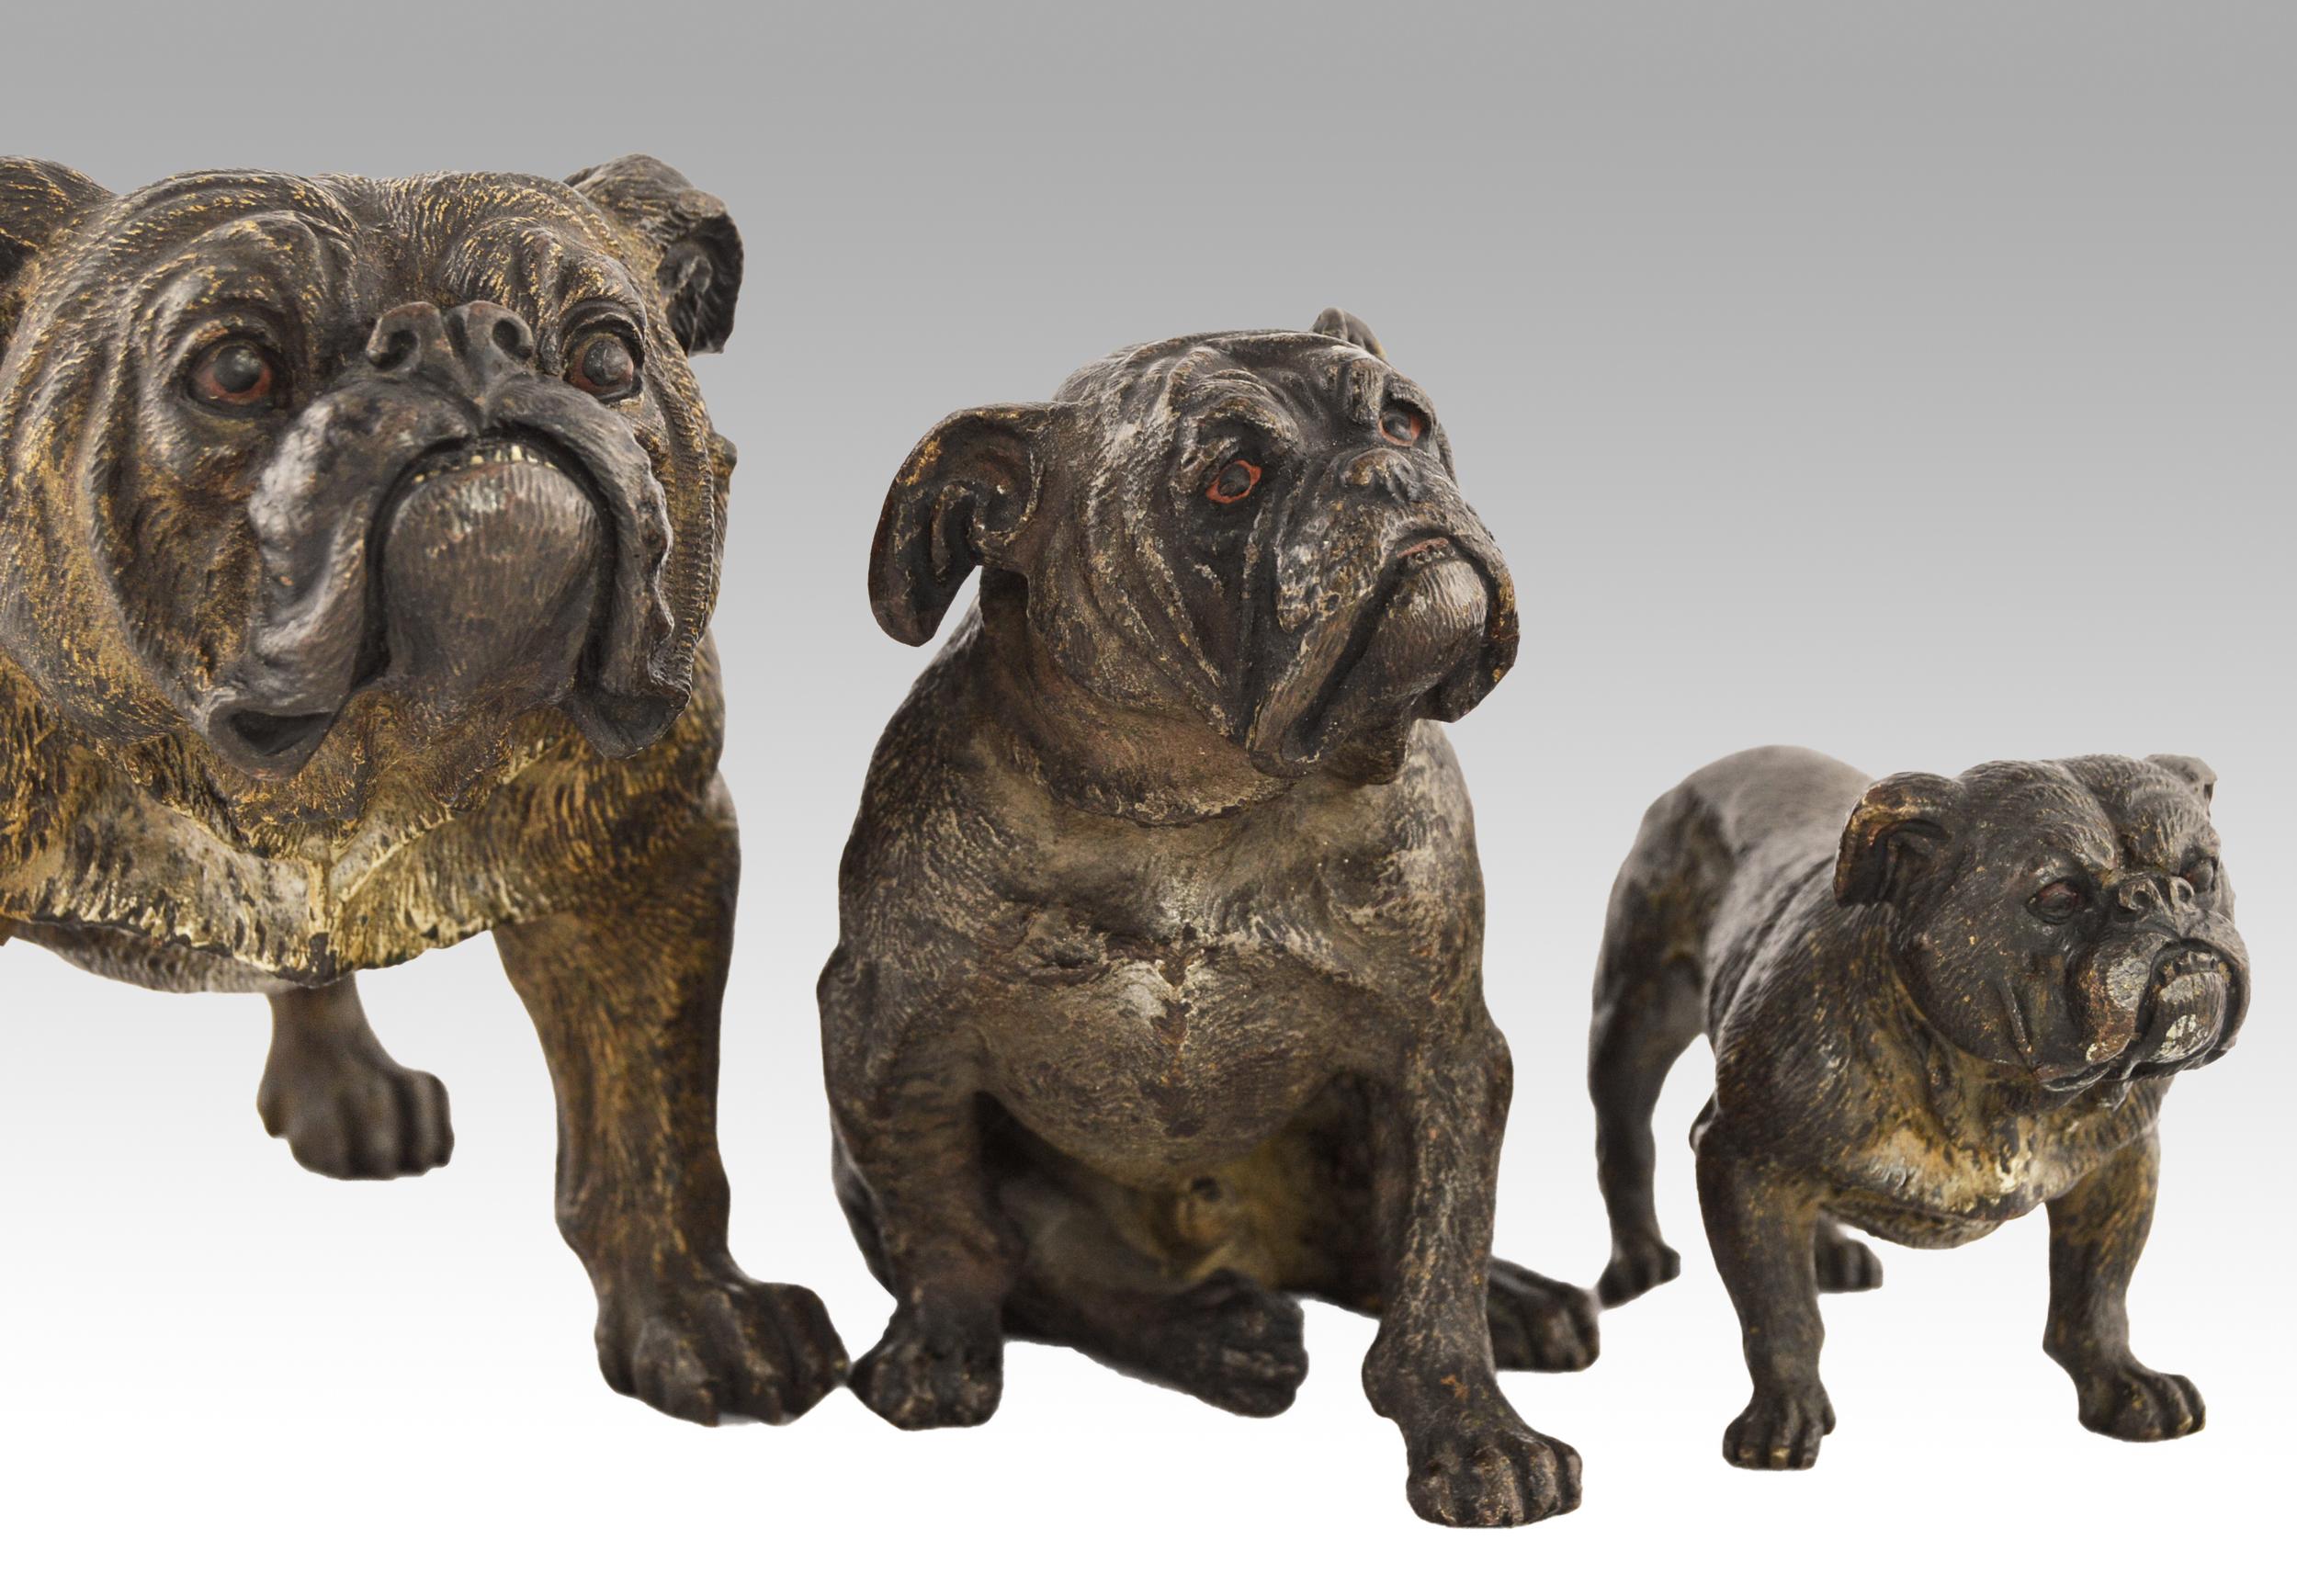 Set of 3 cold painted Austrian bronze sculptures of Bulldogs - Victorian Sculpture by Franz Xaver Bergman (Bergmann)